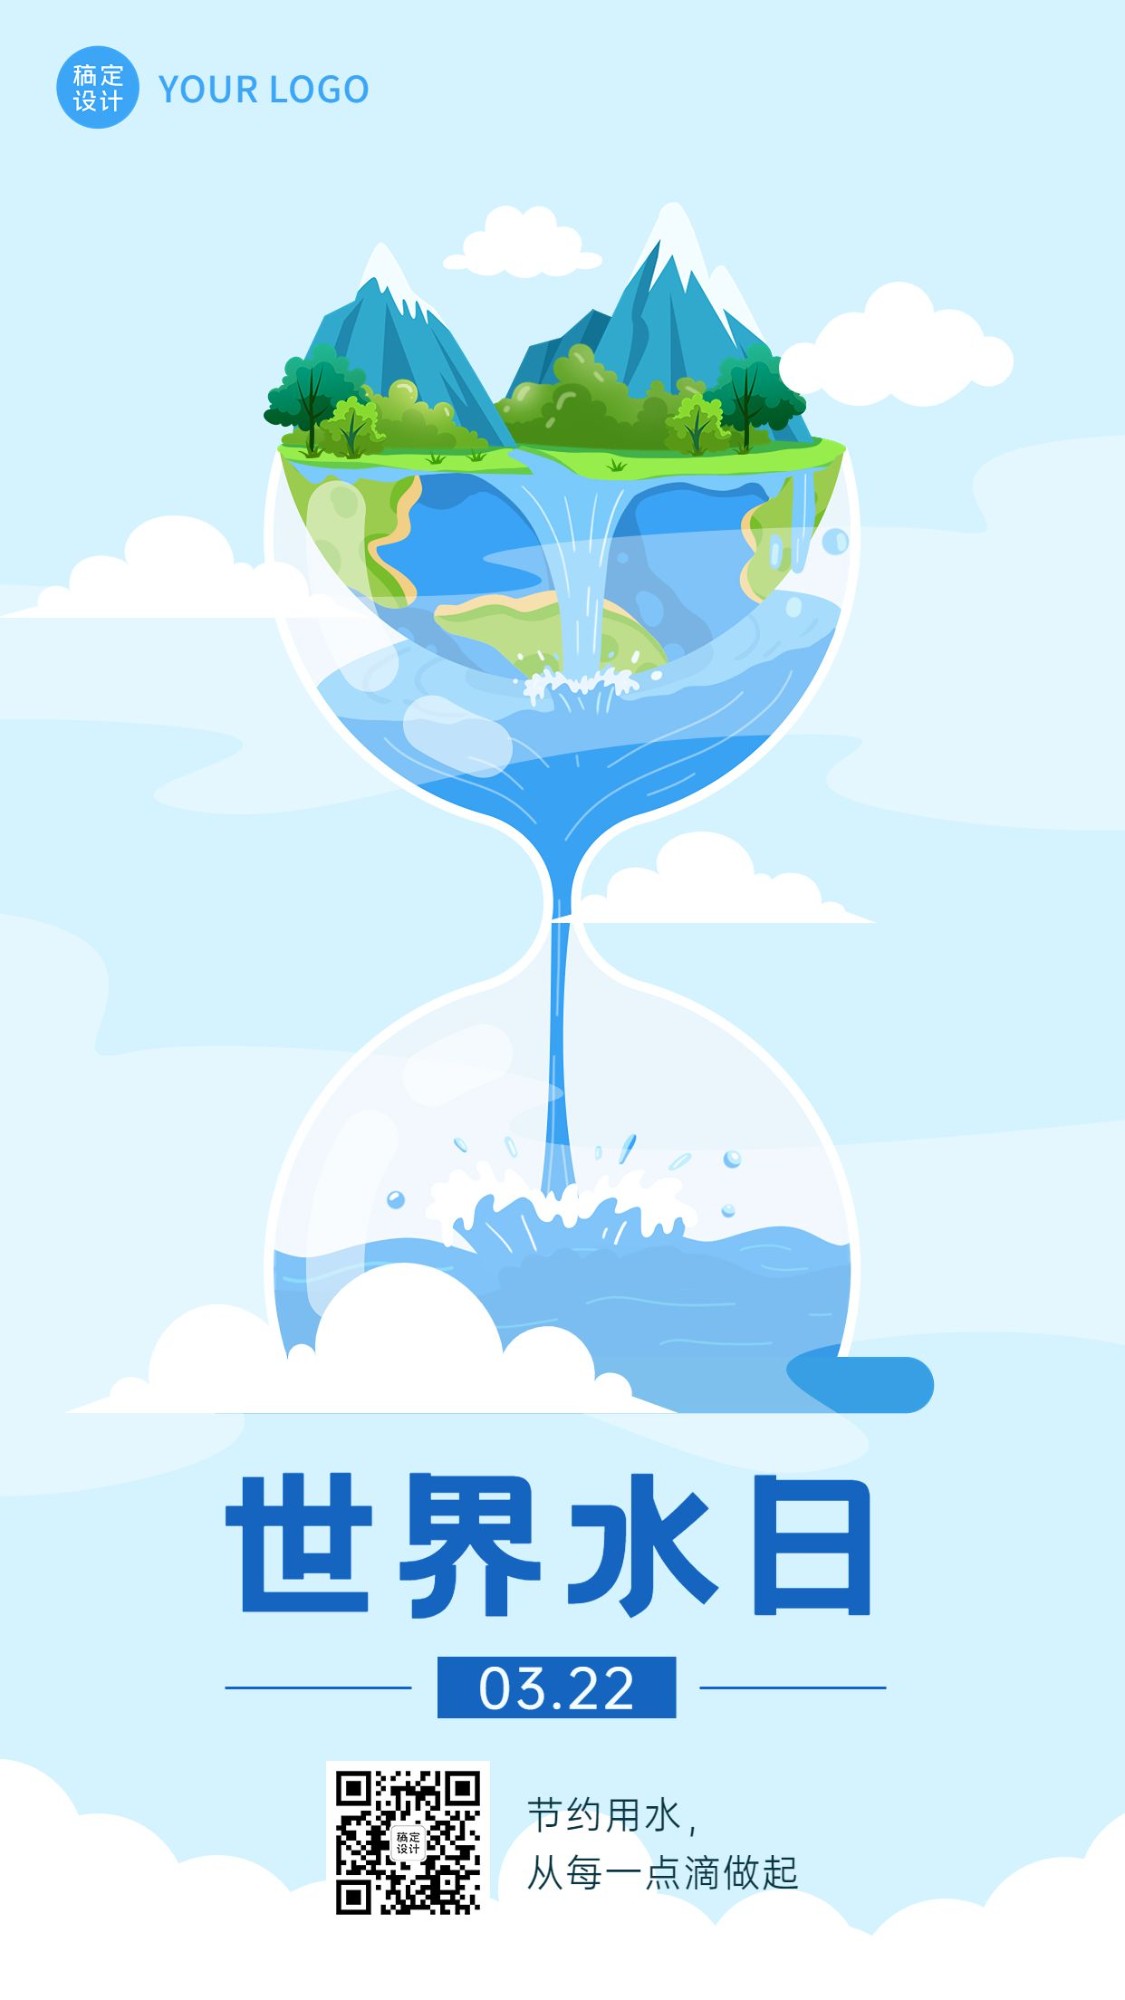 世界水日节日宣传手机海报